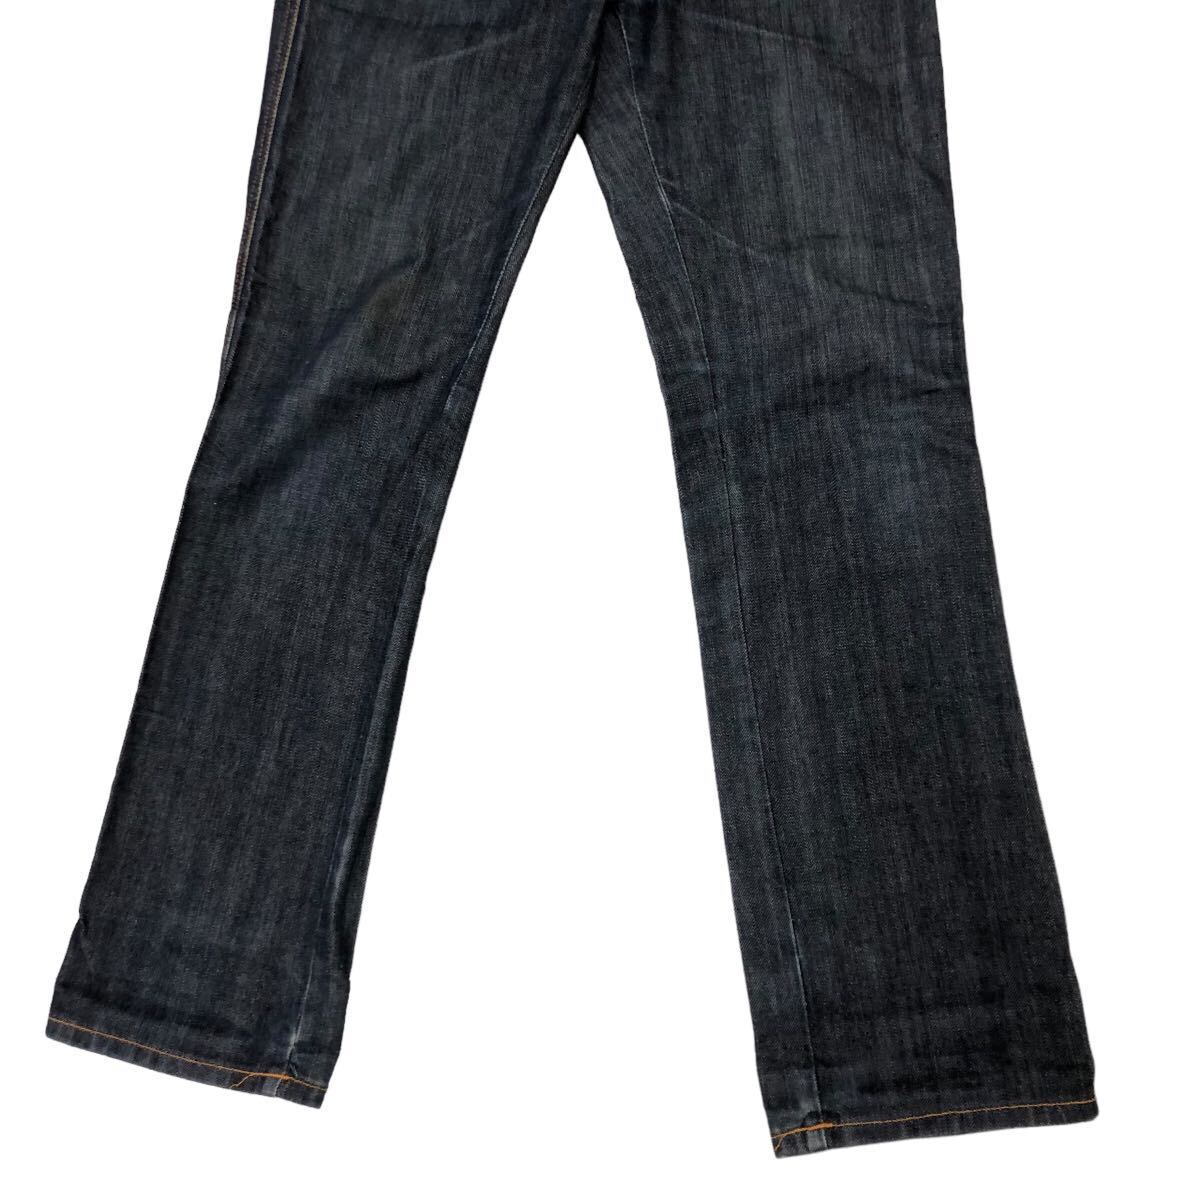 H716 Nudie Jeans ヌーディージーンズ NJ1461 DRY デニム パンツ Gパン ジーンズ ネイビー系 ブルー系 綿100% メンズ 30_画像3